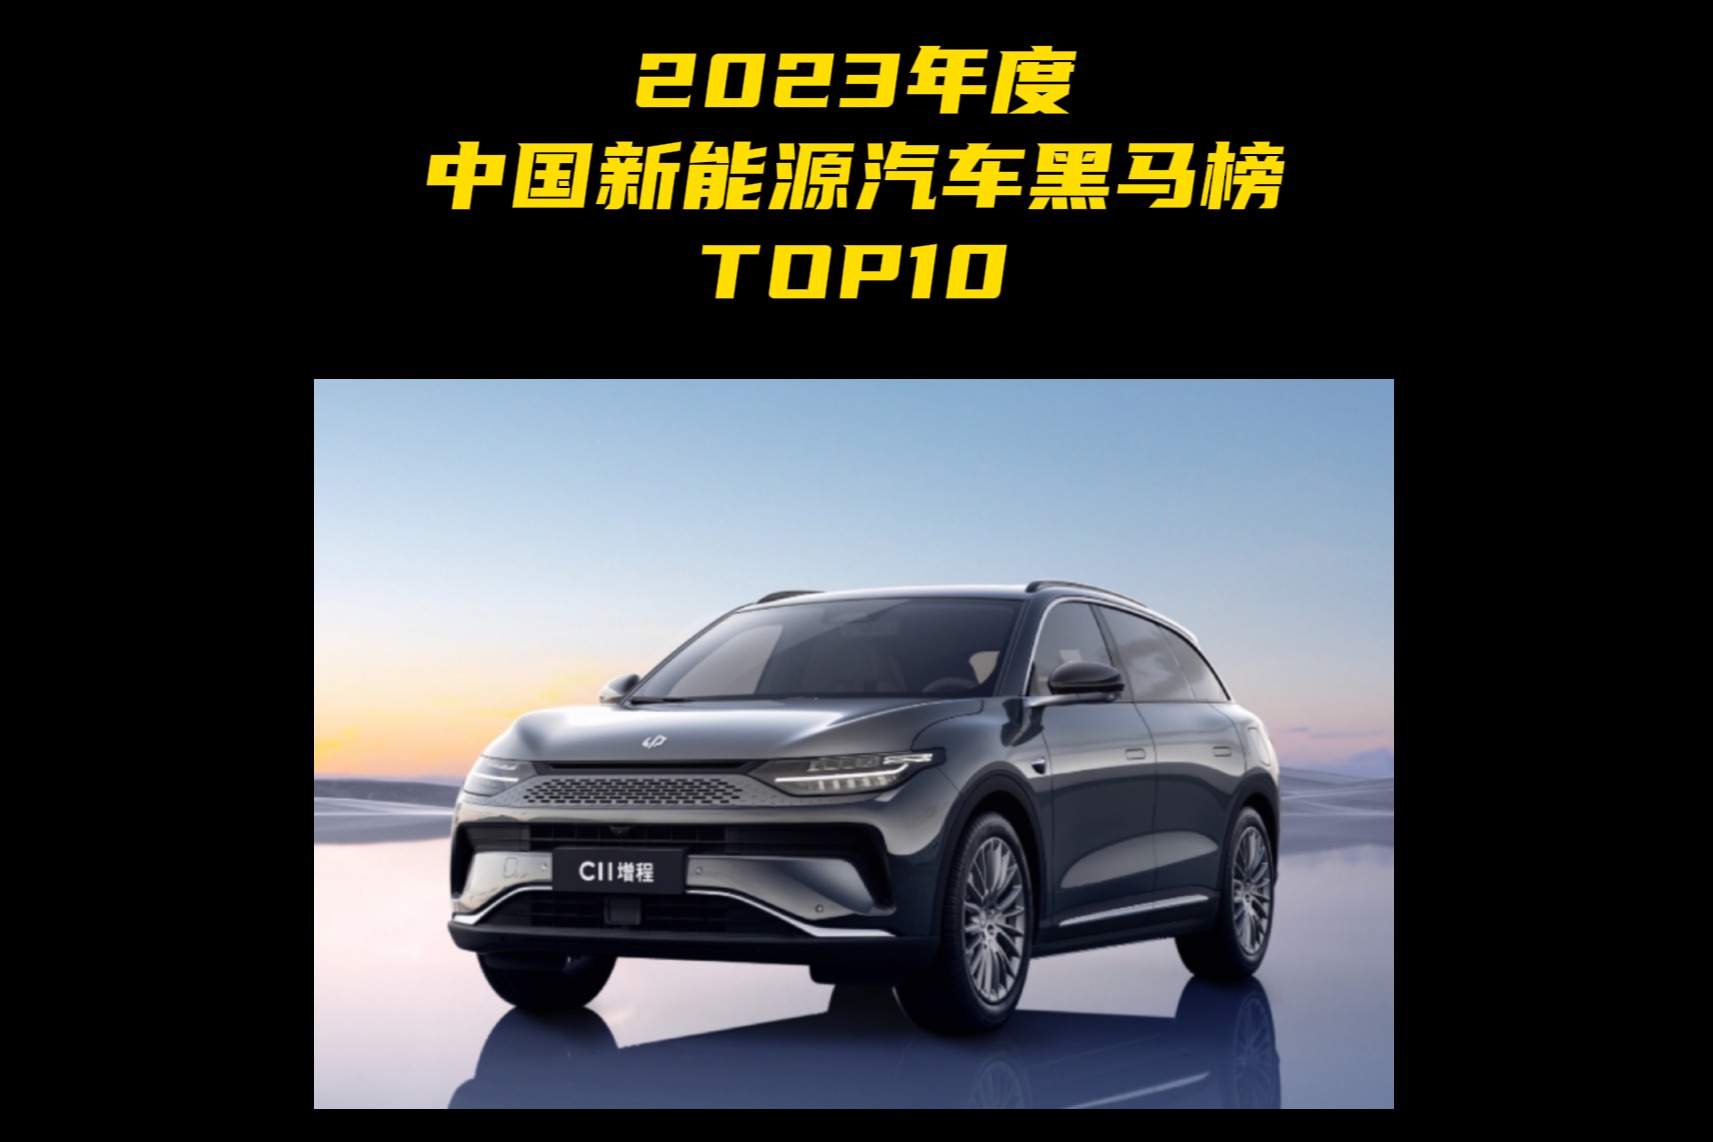 2023年度中国新能源汽车黑马榜TOP10 第九名：零跑C11